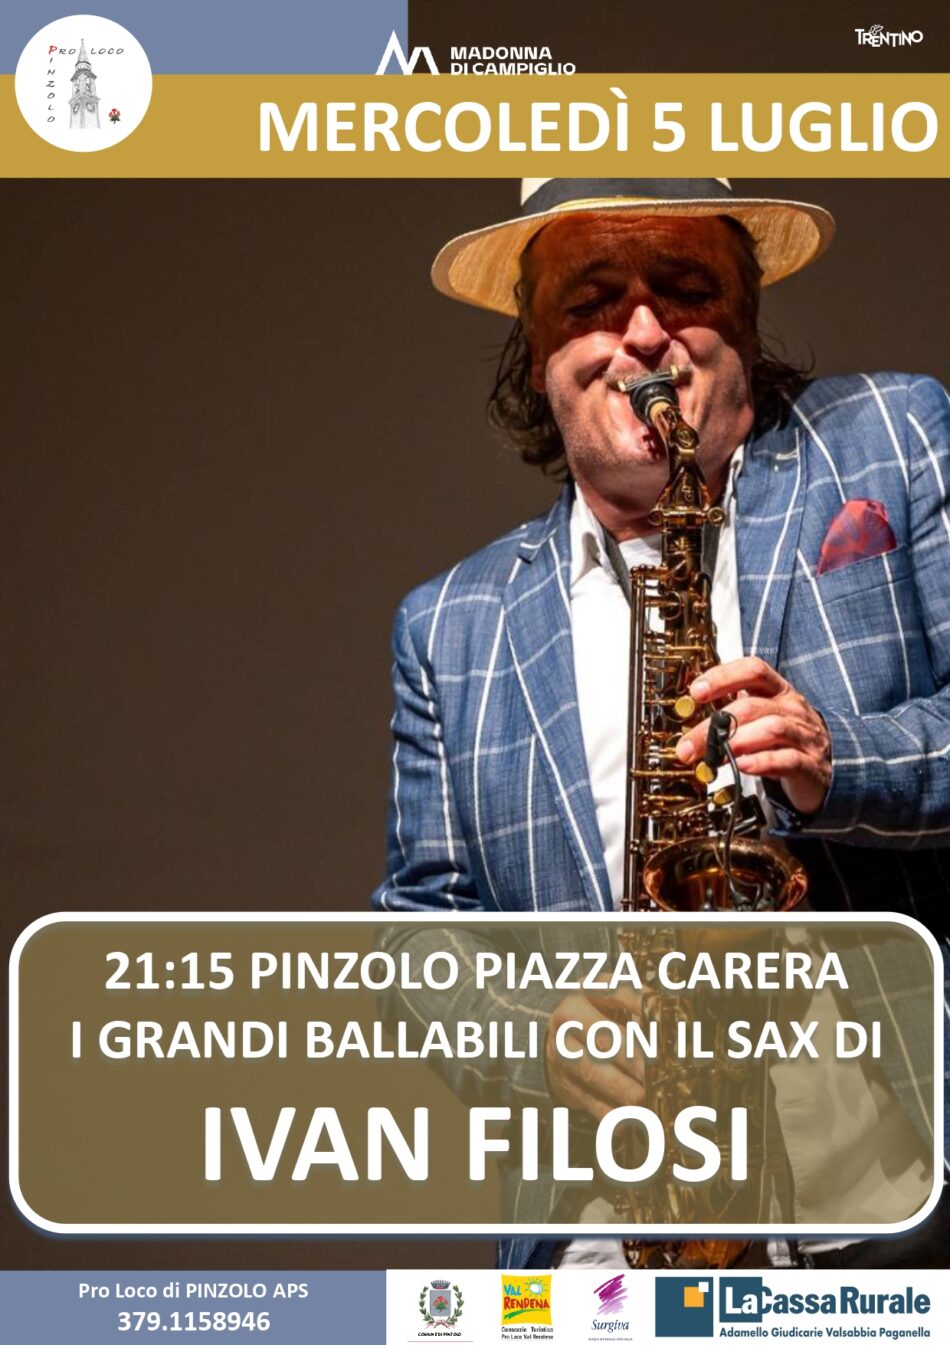 L’Estate è Pinzolo: Mercoledì 5 luglio ore 21.15 I grandi ballabili con il sax di IVAN FILOSI in Piazza Carera